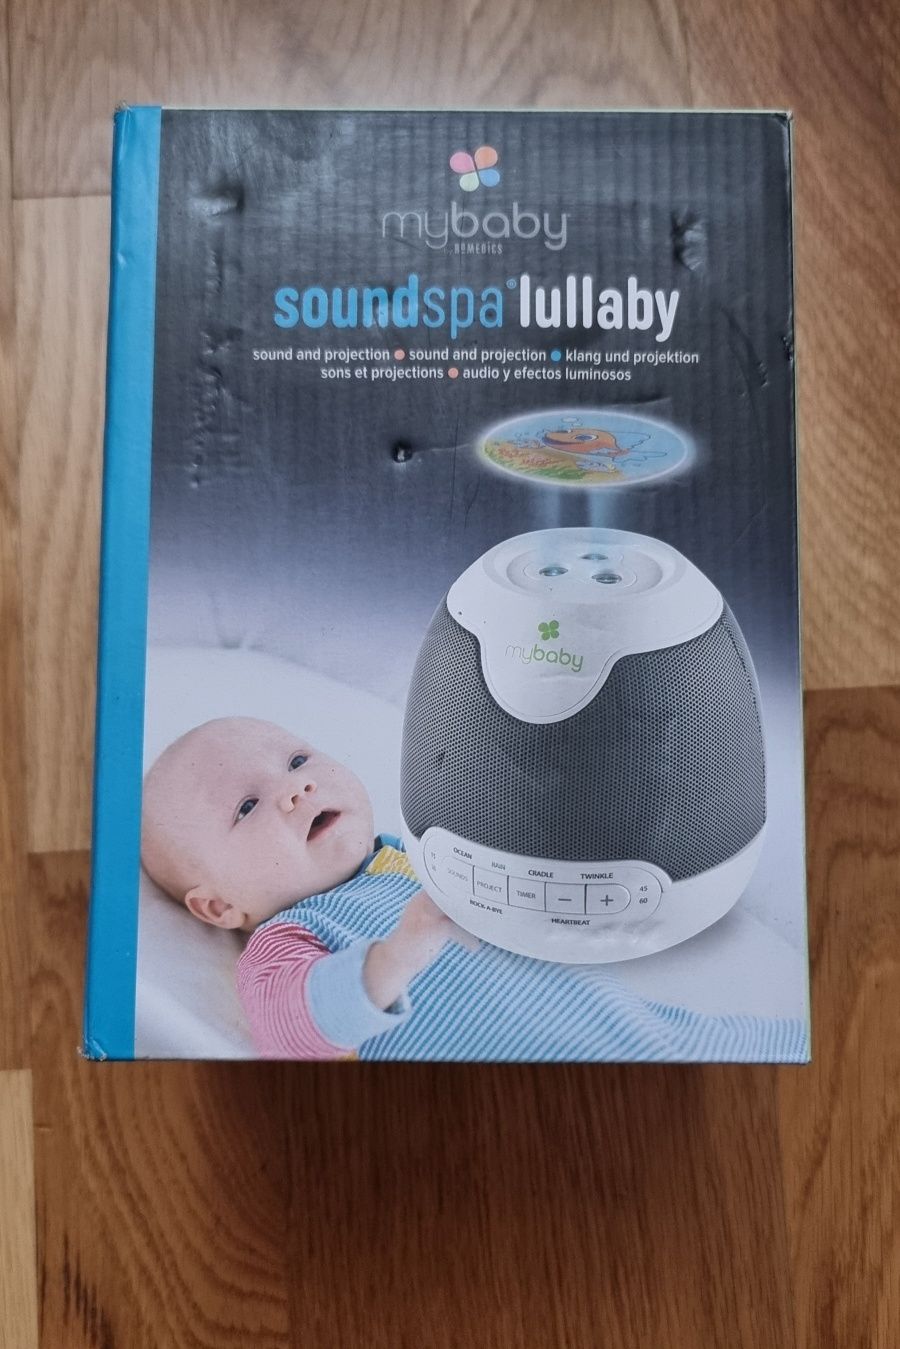 projektor soundspa lullaby